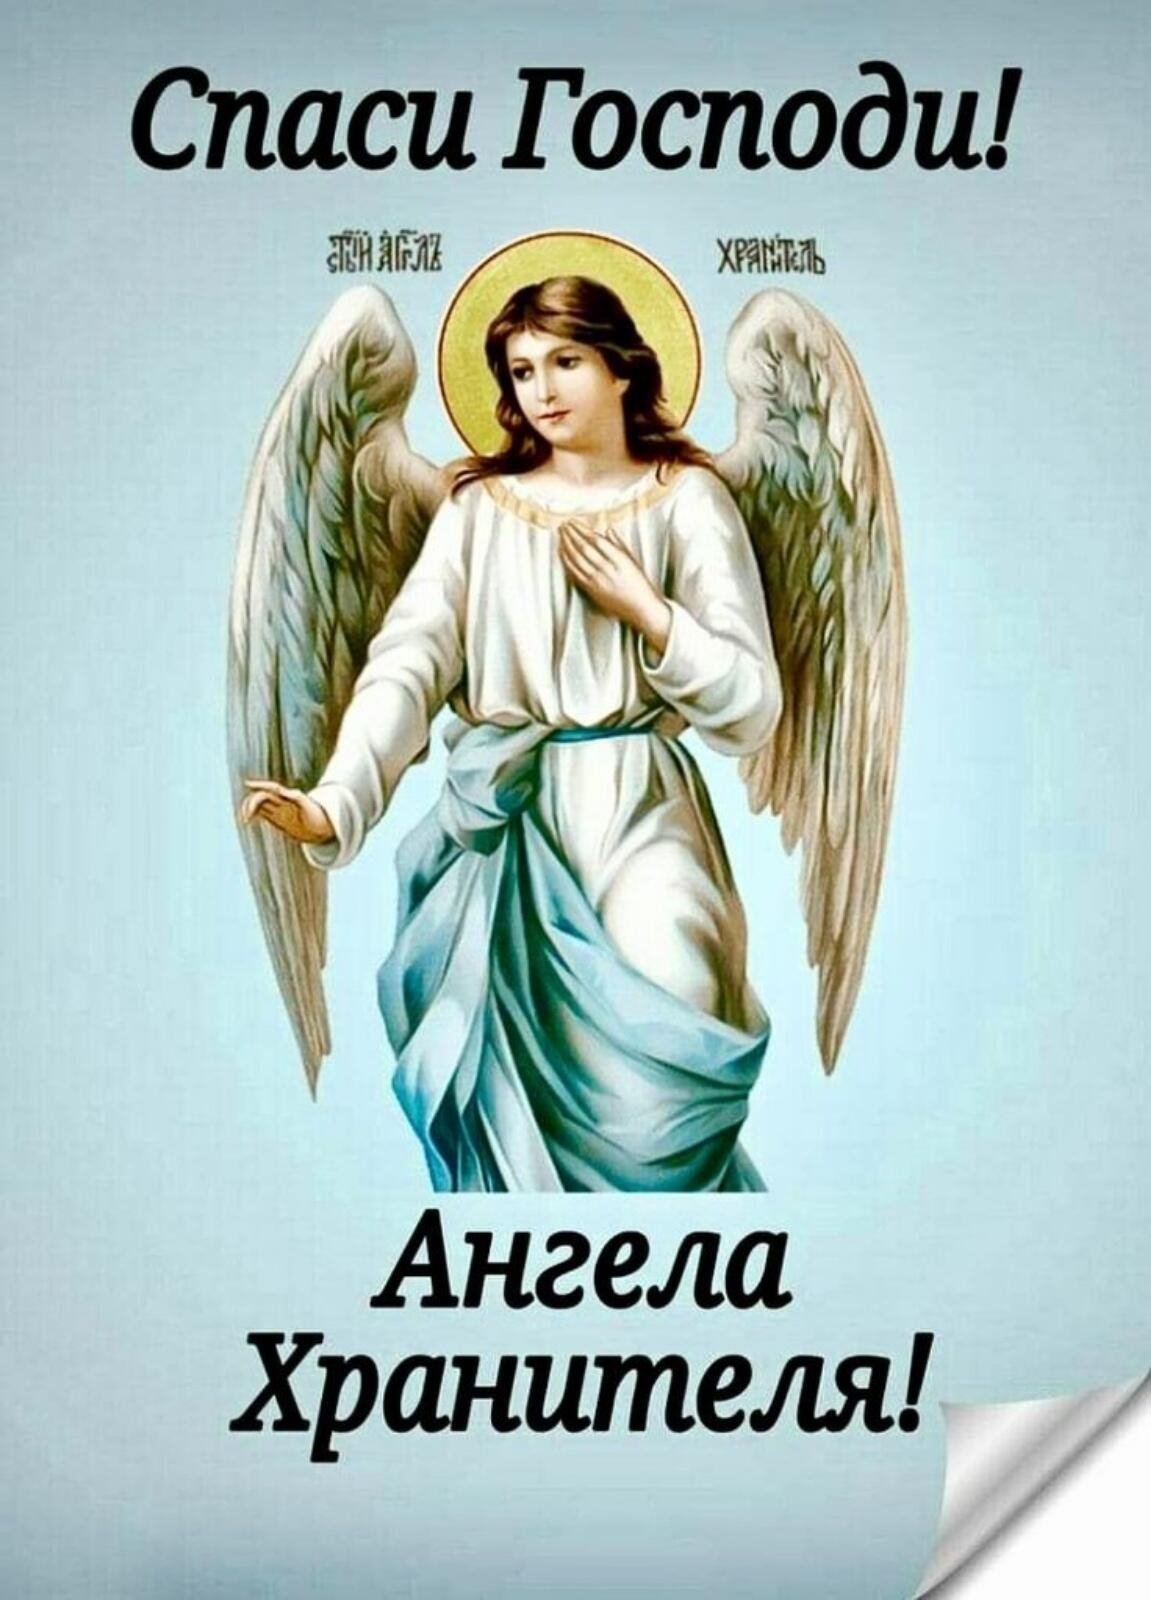 Православные открытки с ангелами. Ангел-хранитель. Ангела хранителя. Ангела хранителя вдорргу. Ангела хранителя в дорогу.